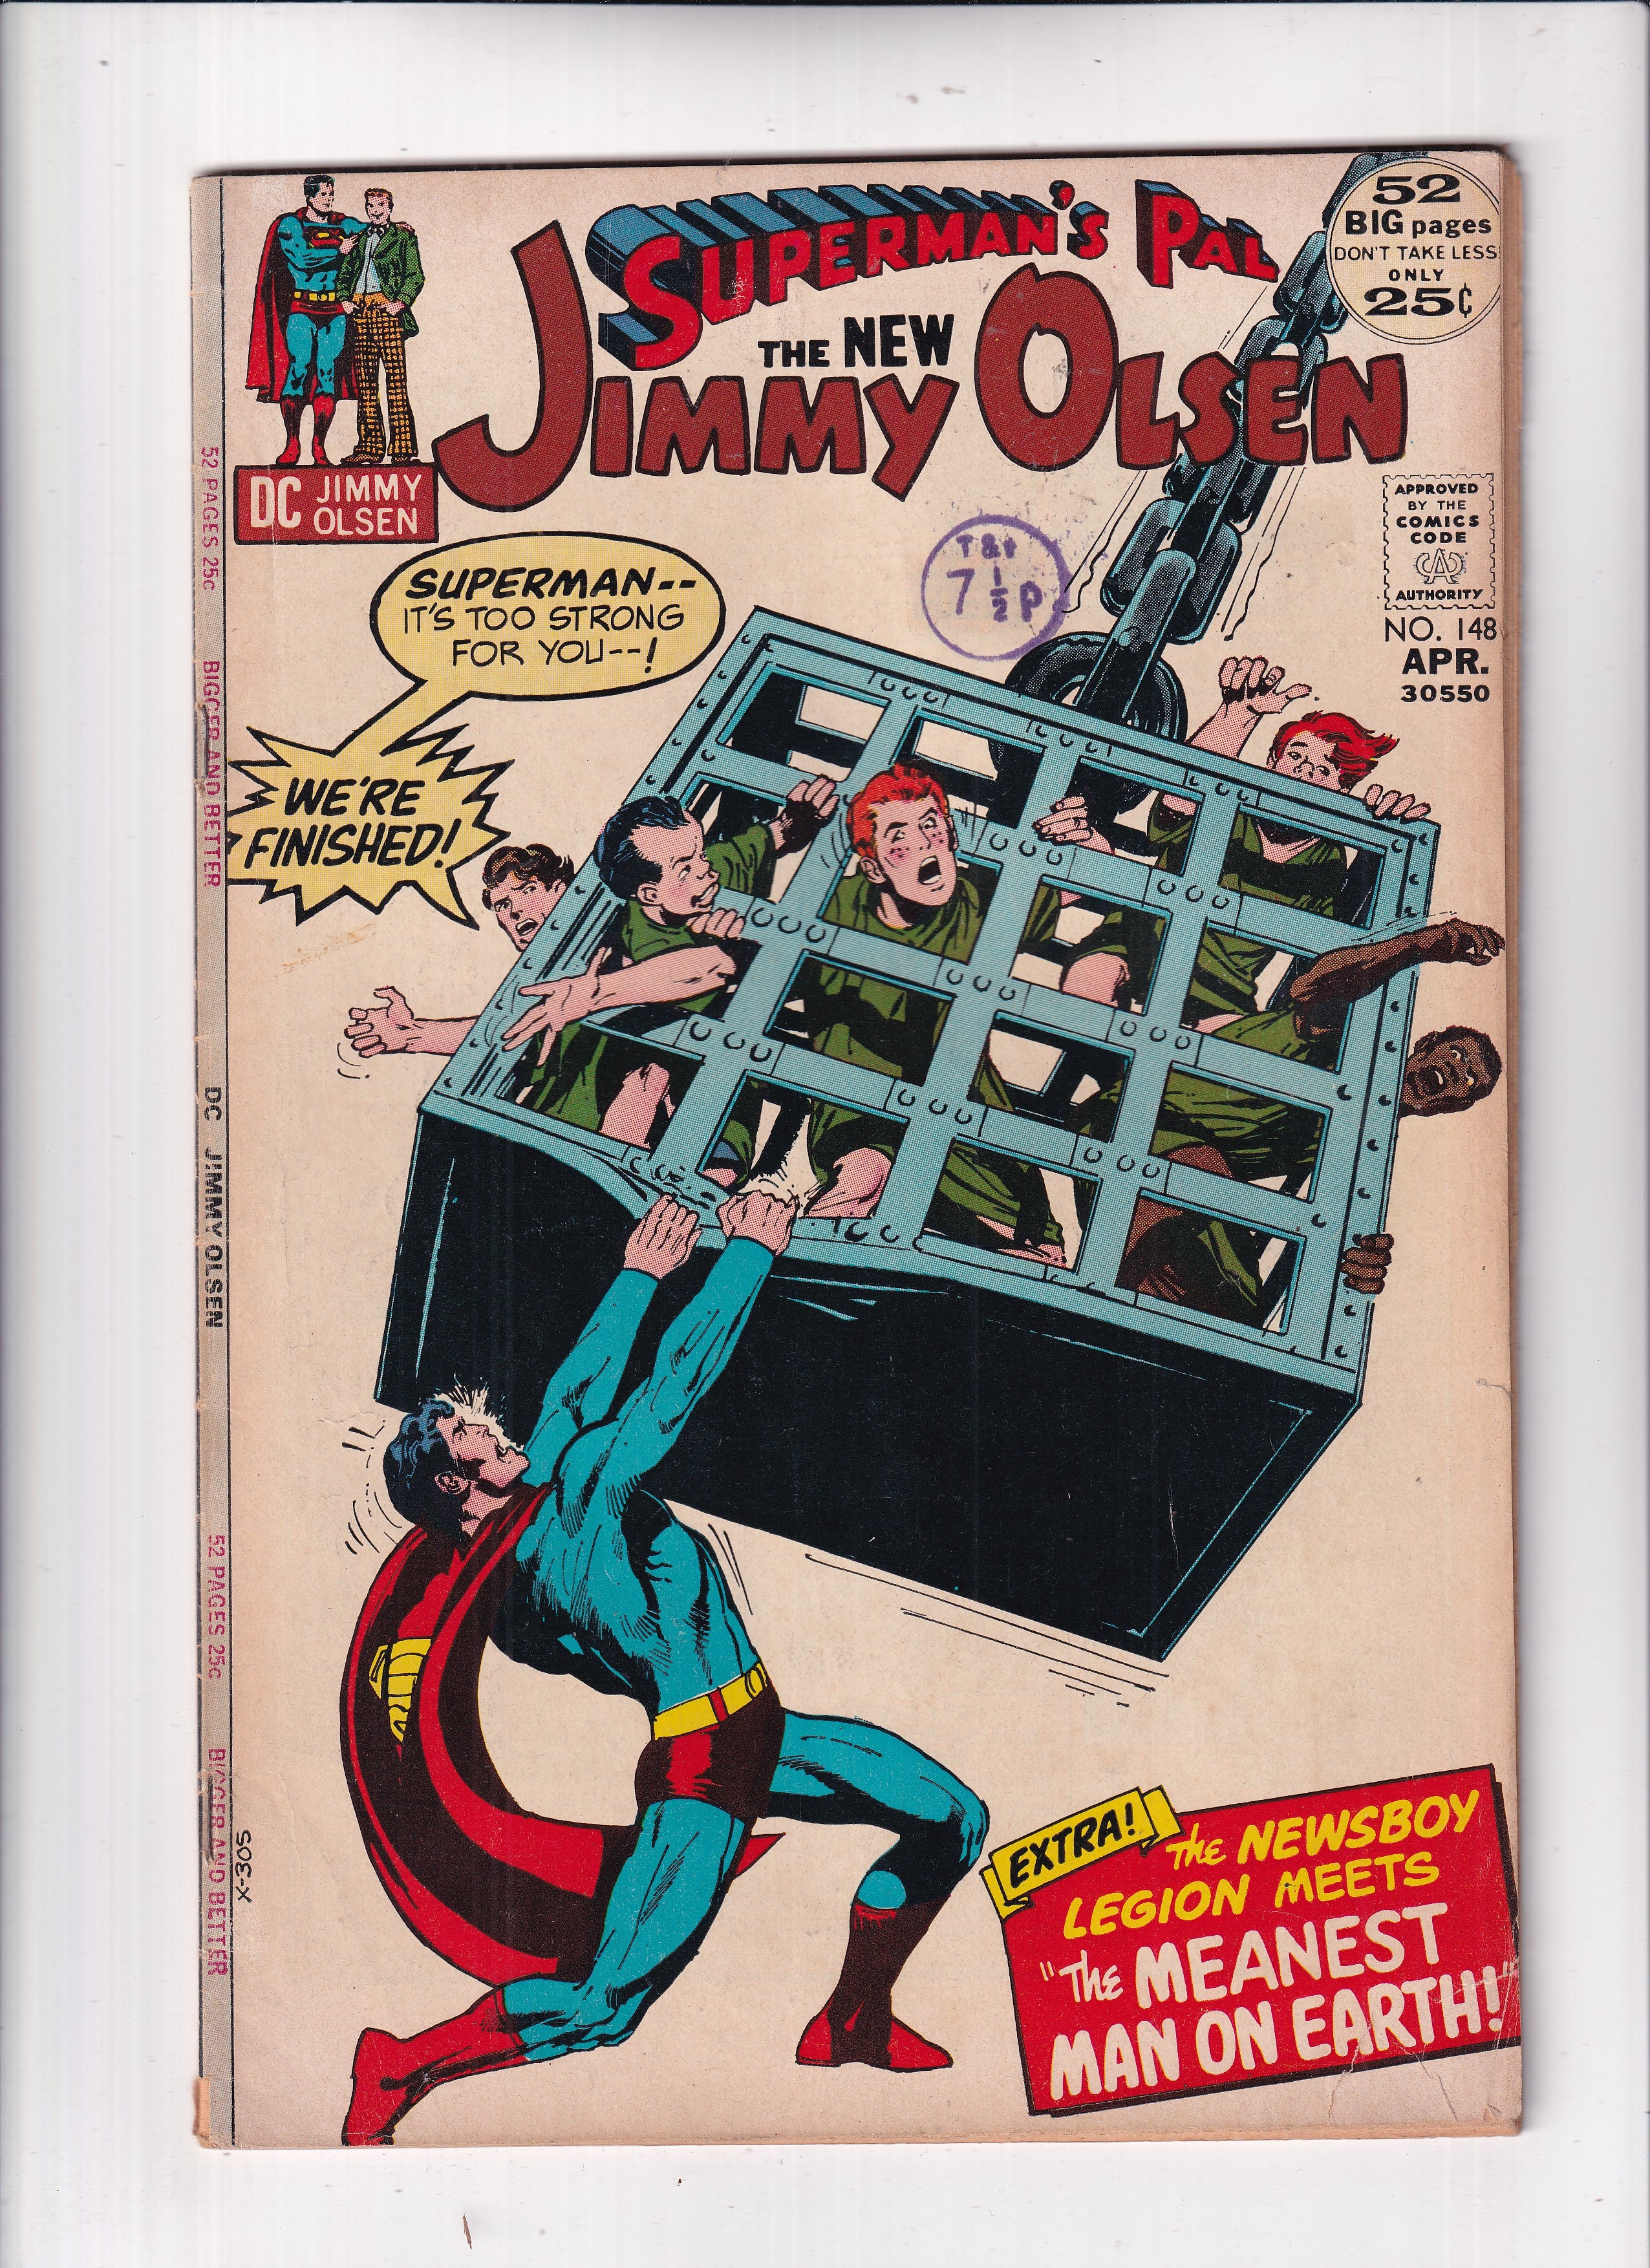 SUPERMAN'S PAL JIMMY OLSEN #148 - Slab City Comics 